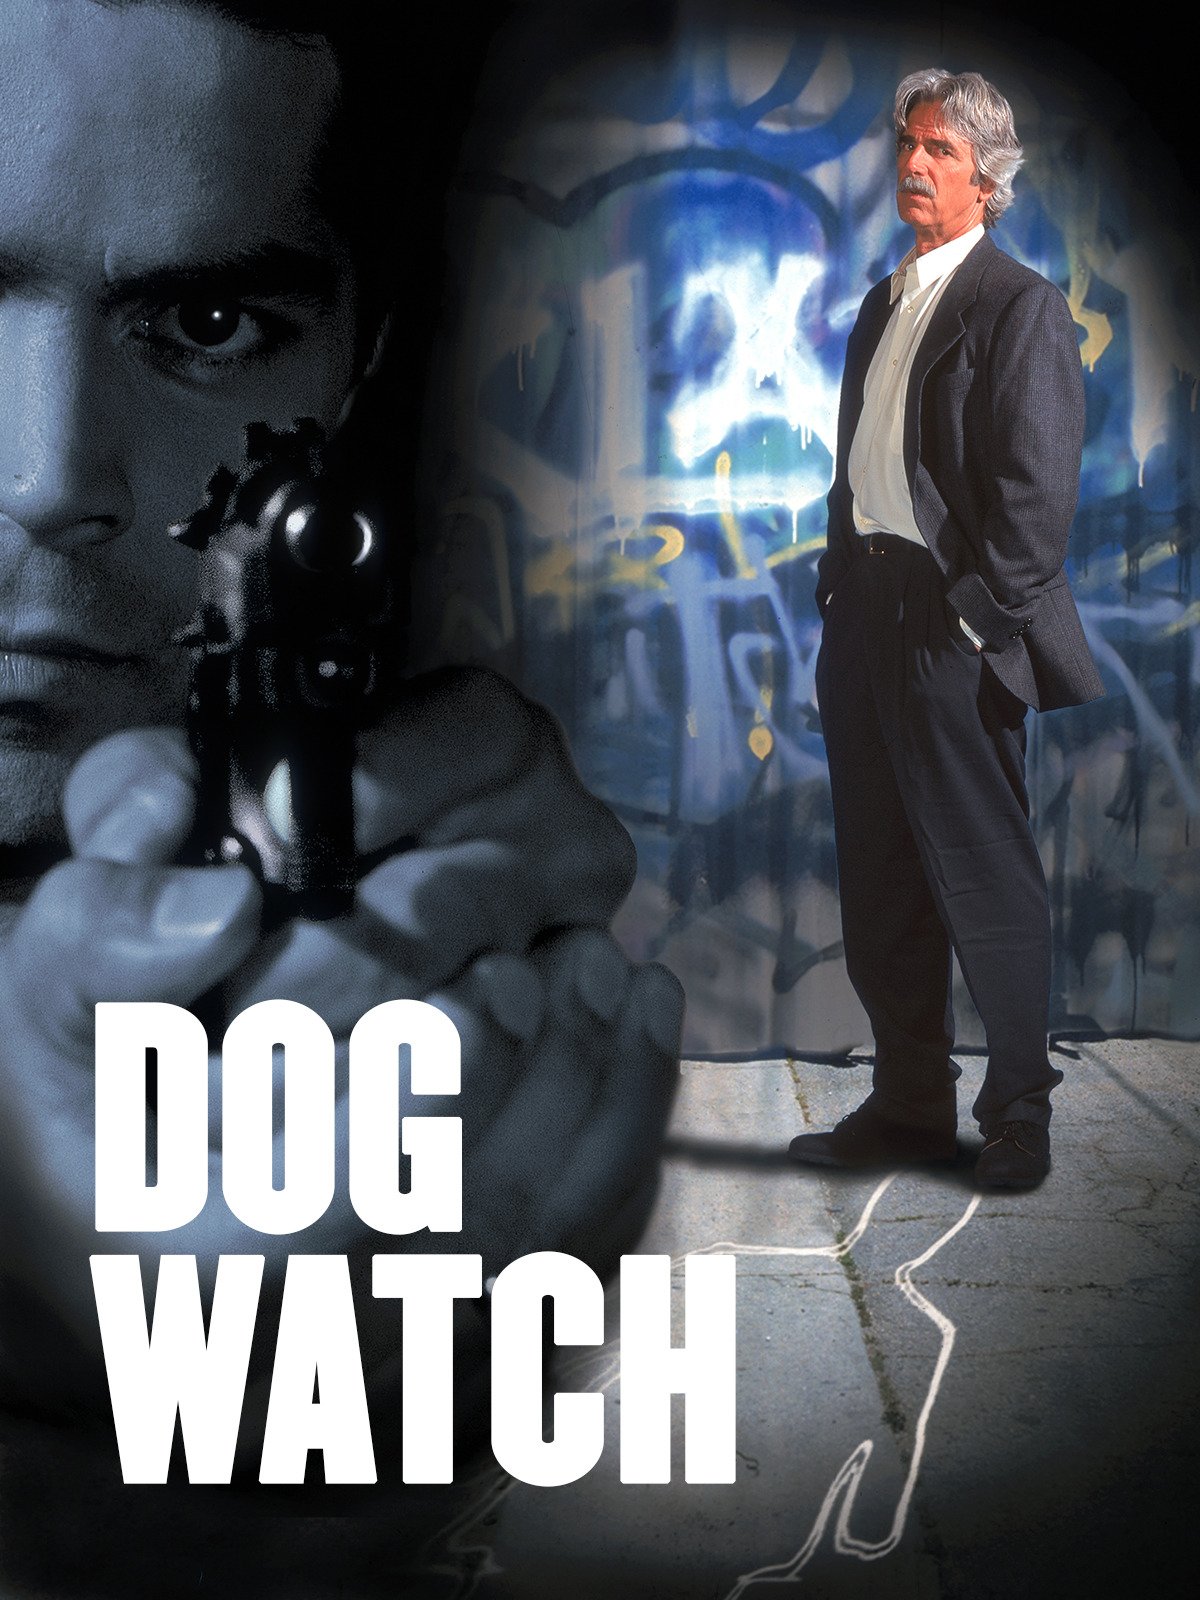 Dog Watch (1997) Screenshot 2 